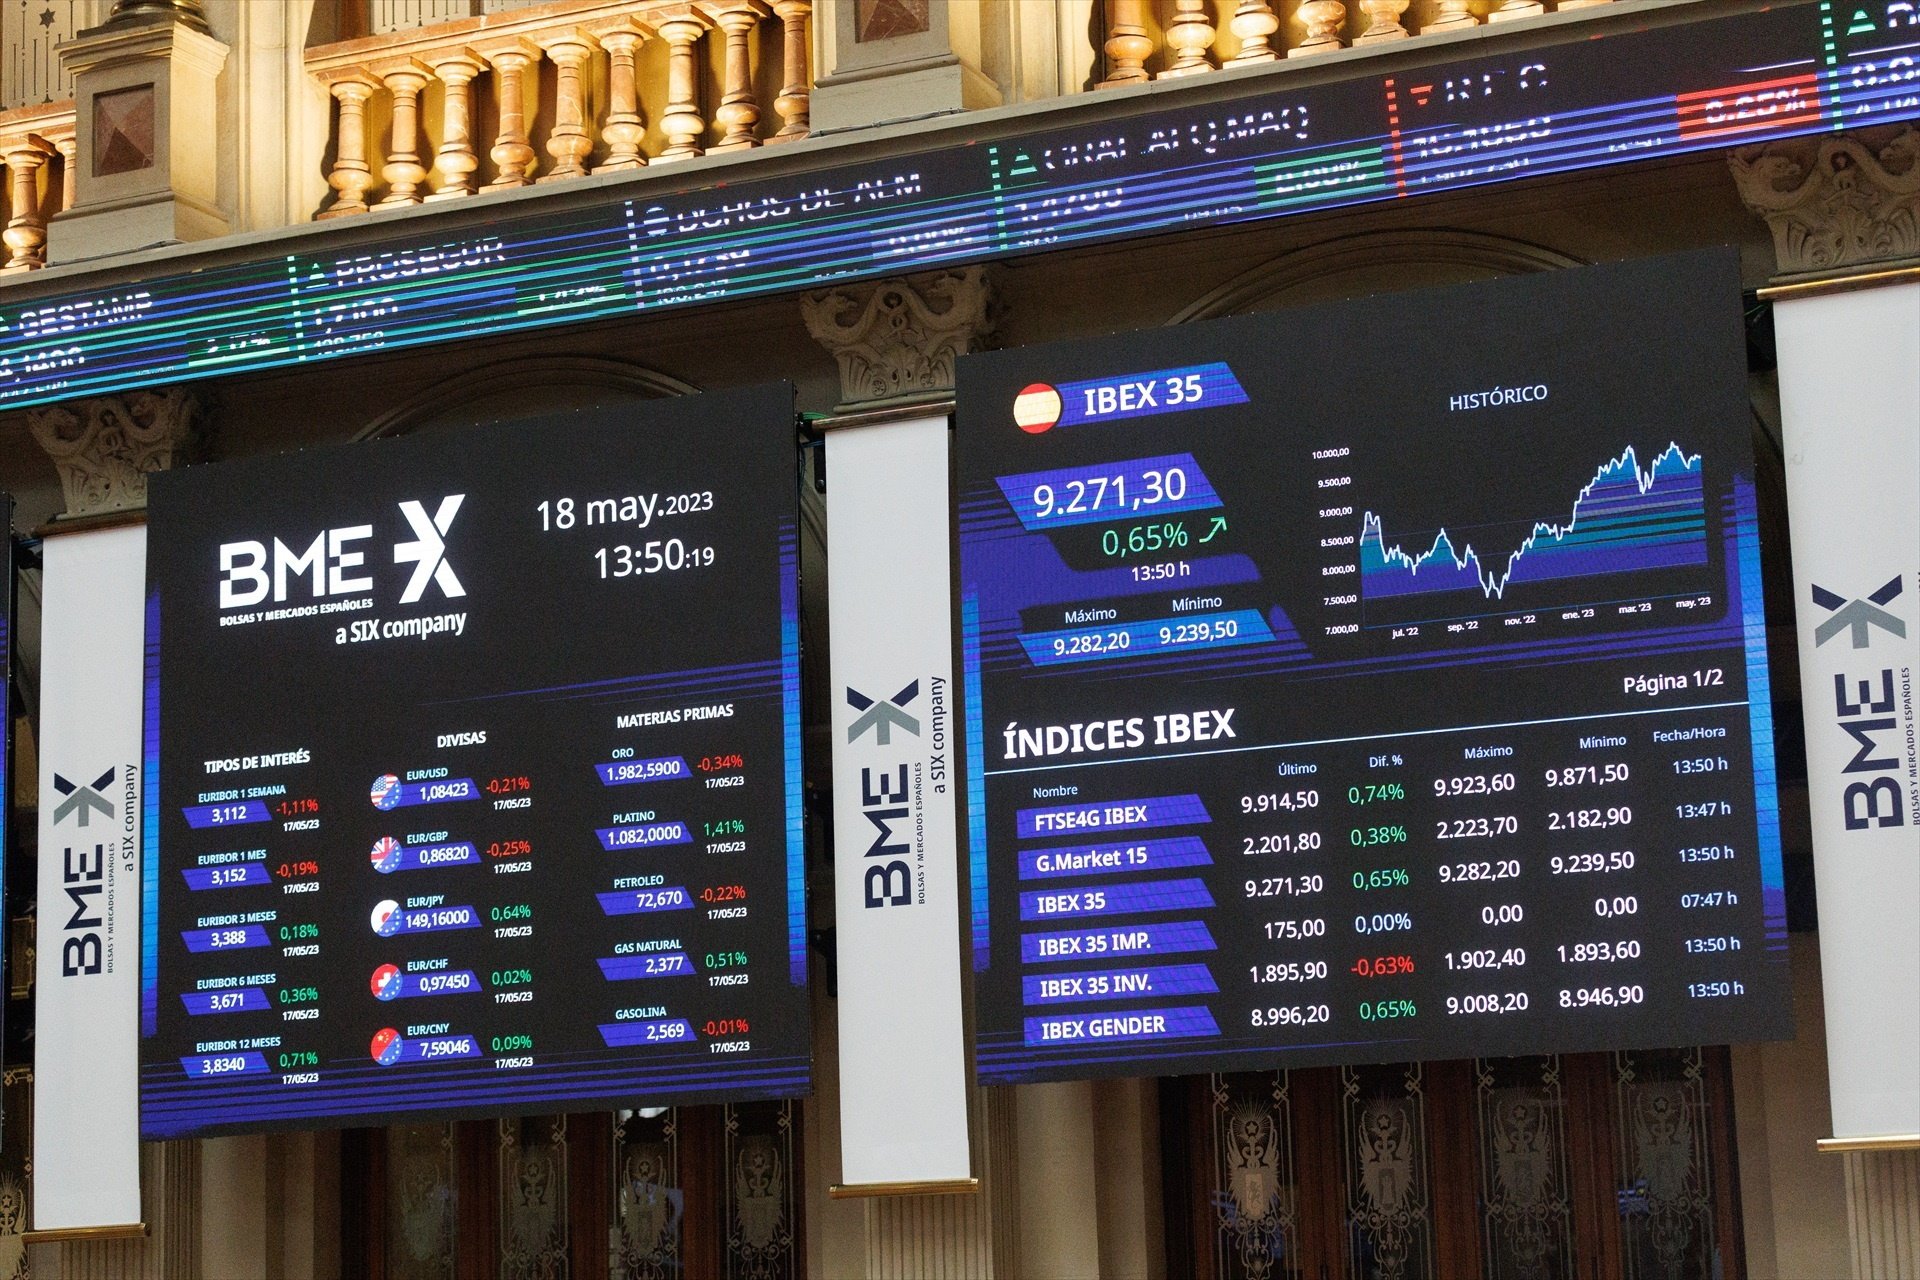 L'IBEX 35 puja un 0,2% en la setmana pendent del sostre de deute als EUA